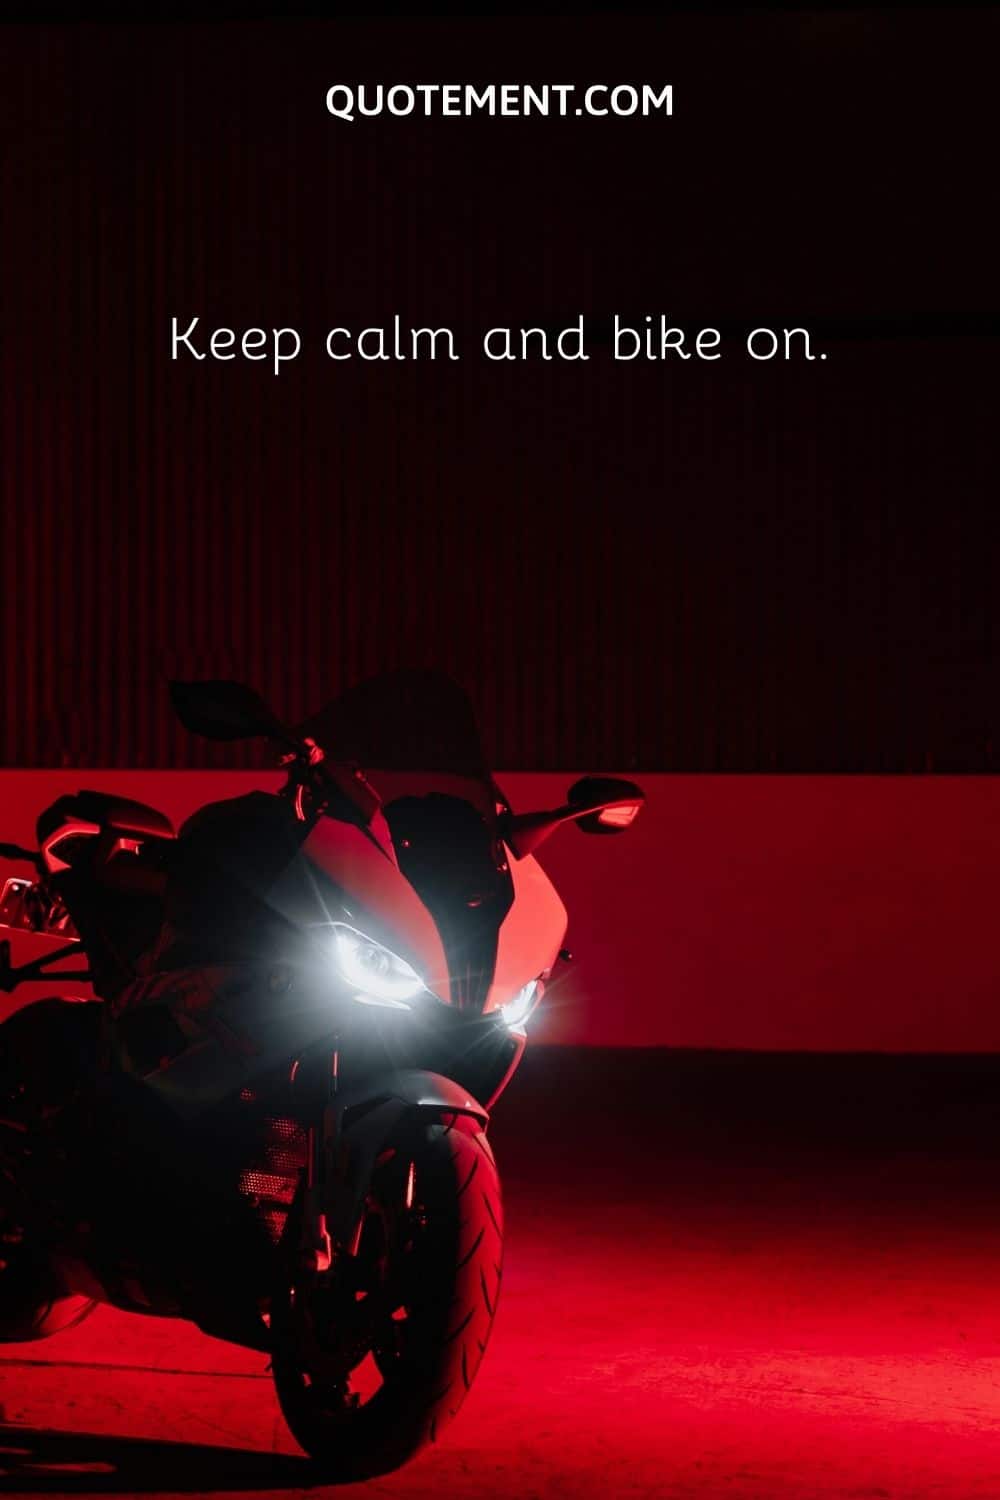 Keep calm and bike on.